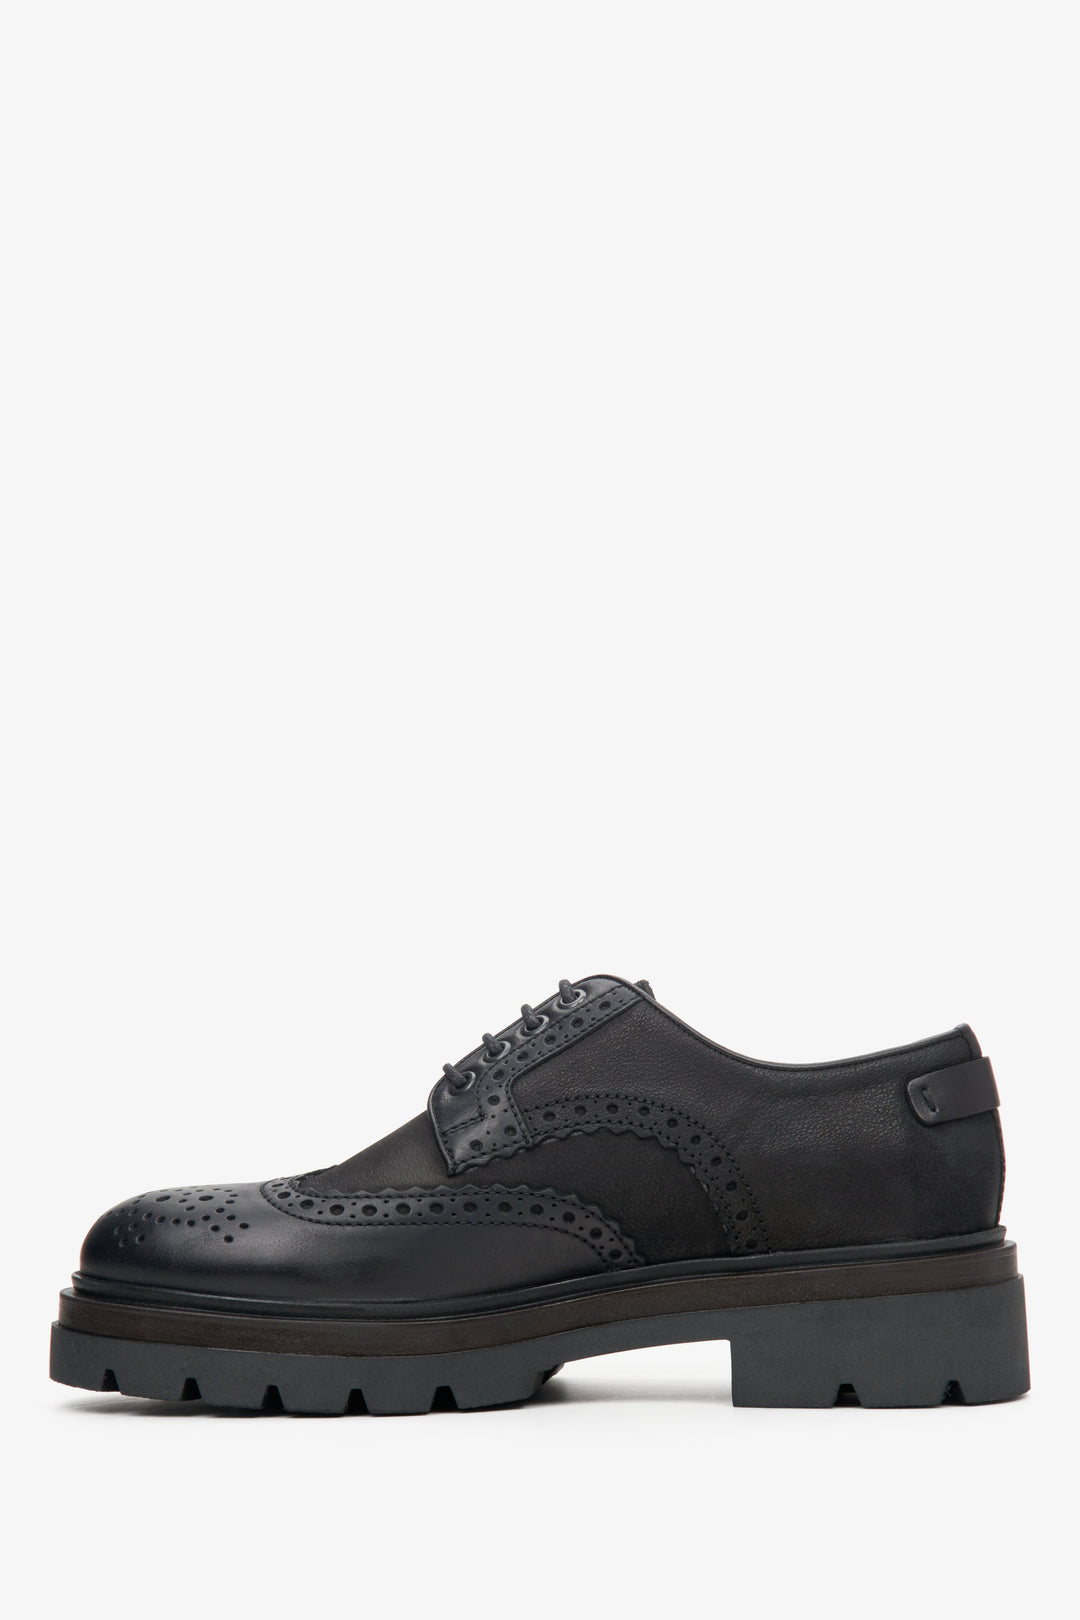 Męskie półbuty sznurowane typu oksford w kolorze czarnym marki Estro - profil butów.